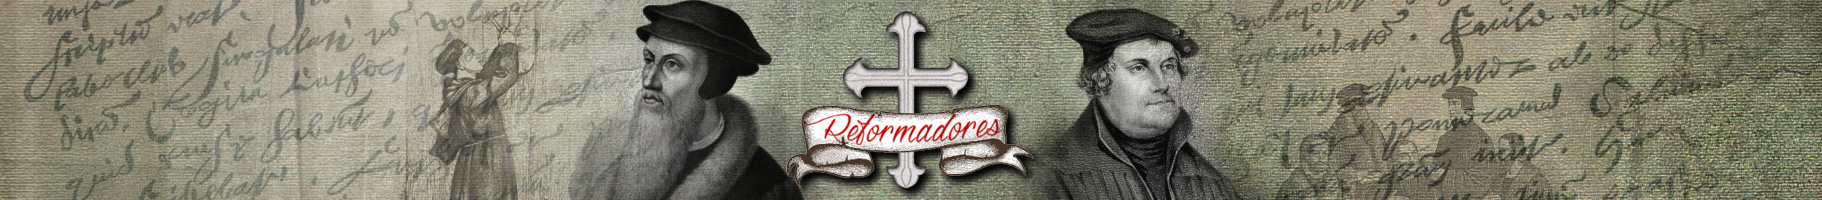 Reformadores